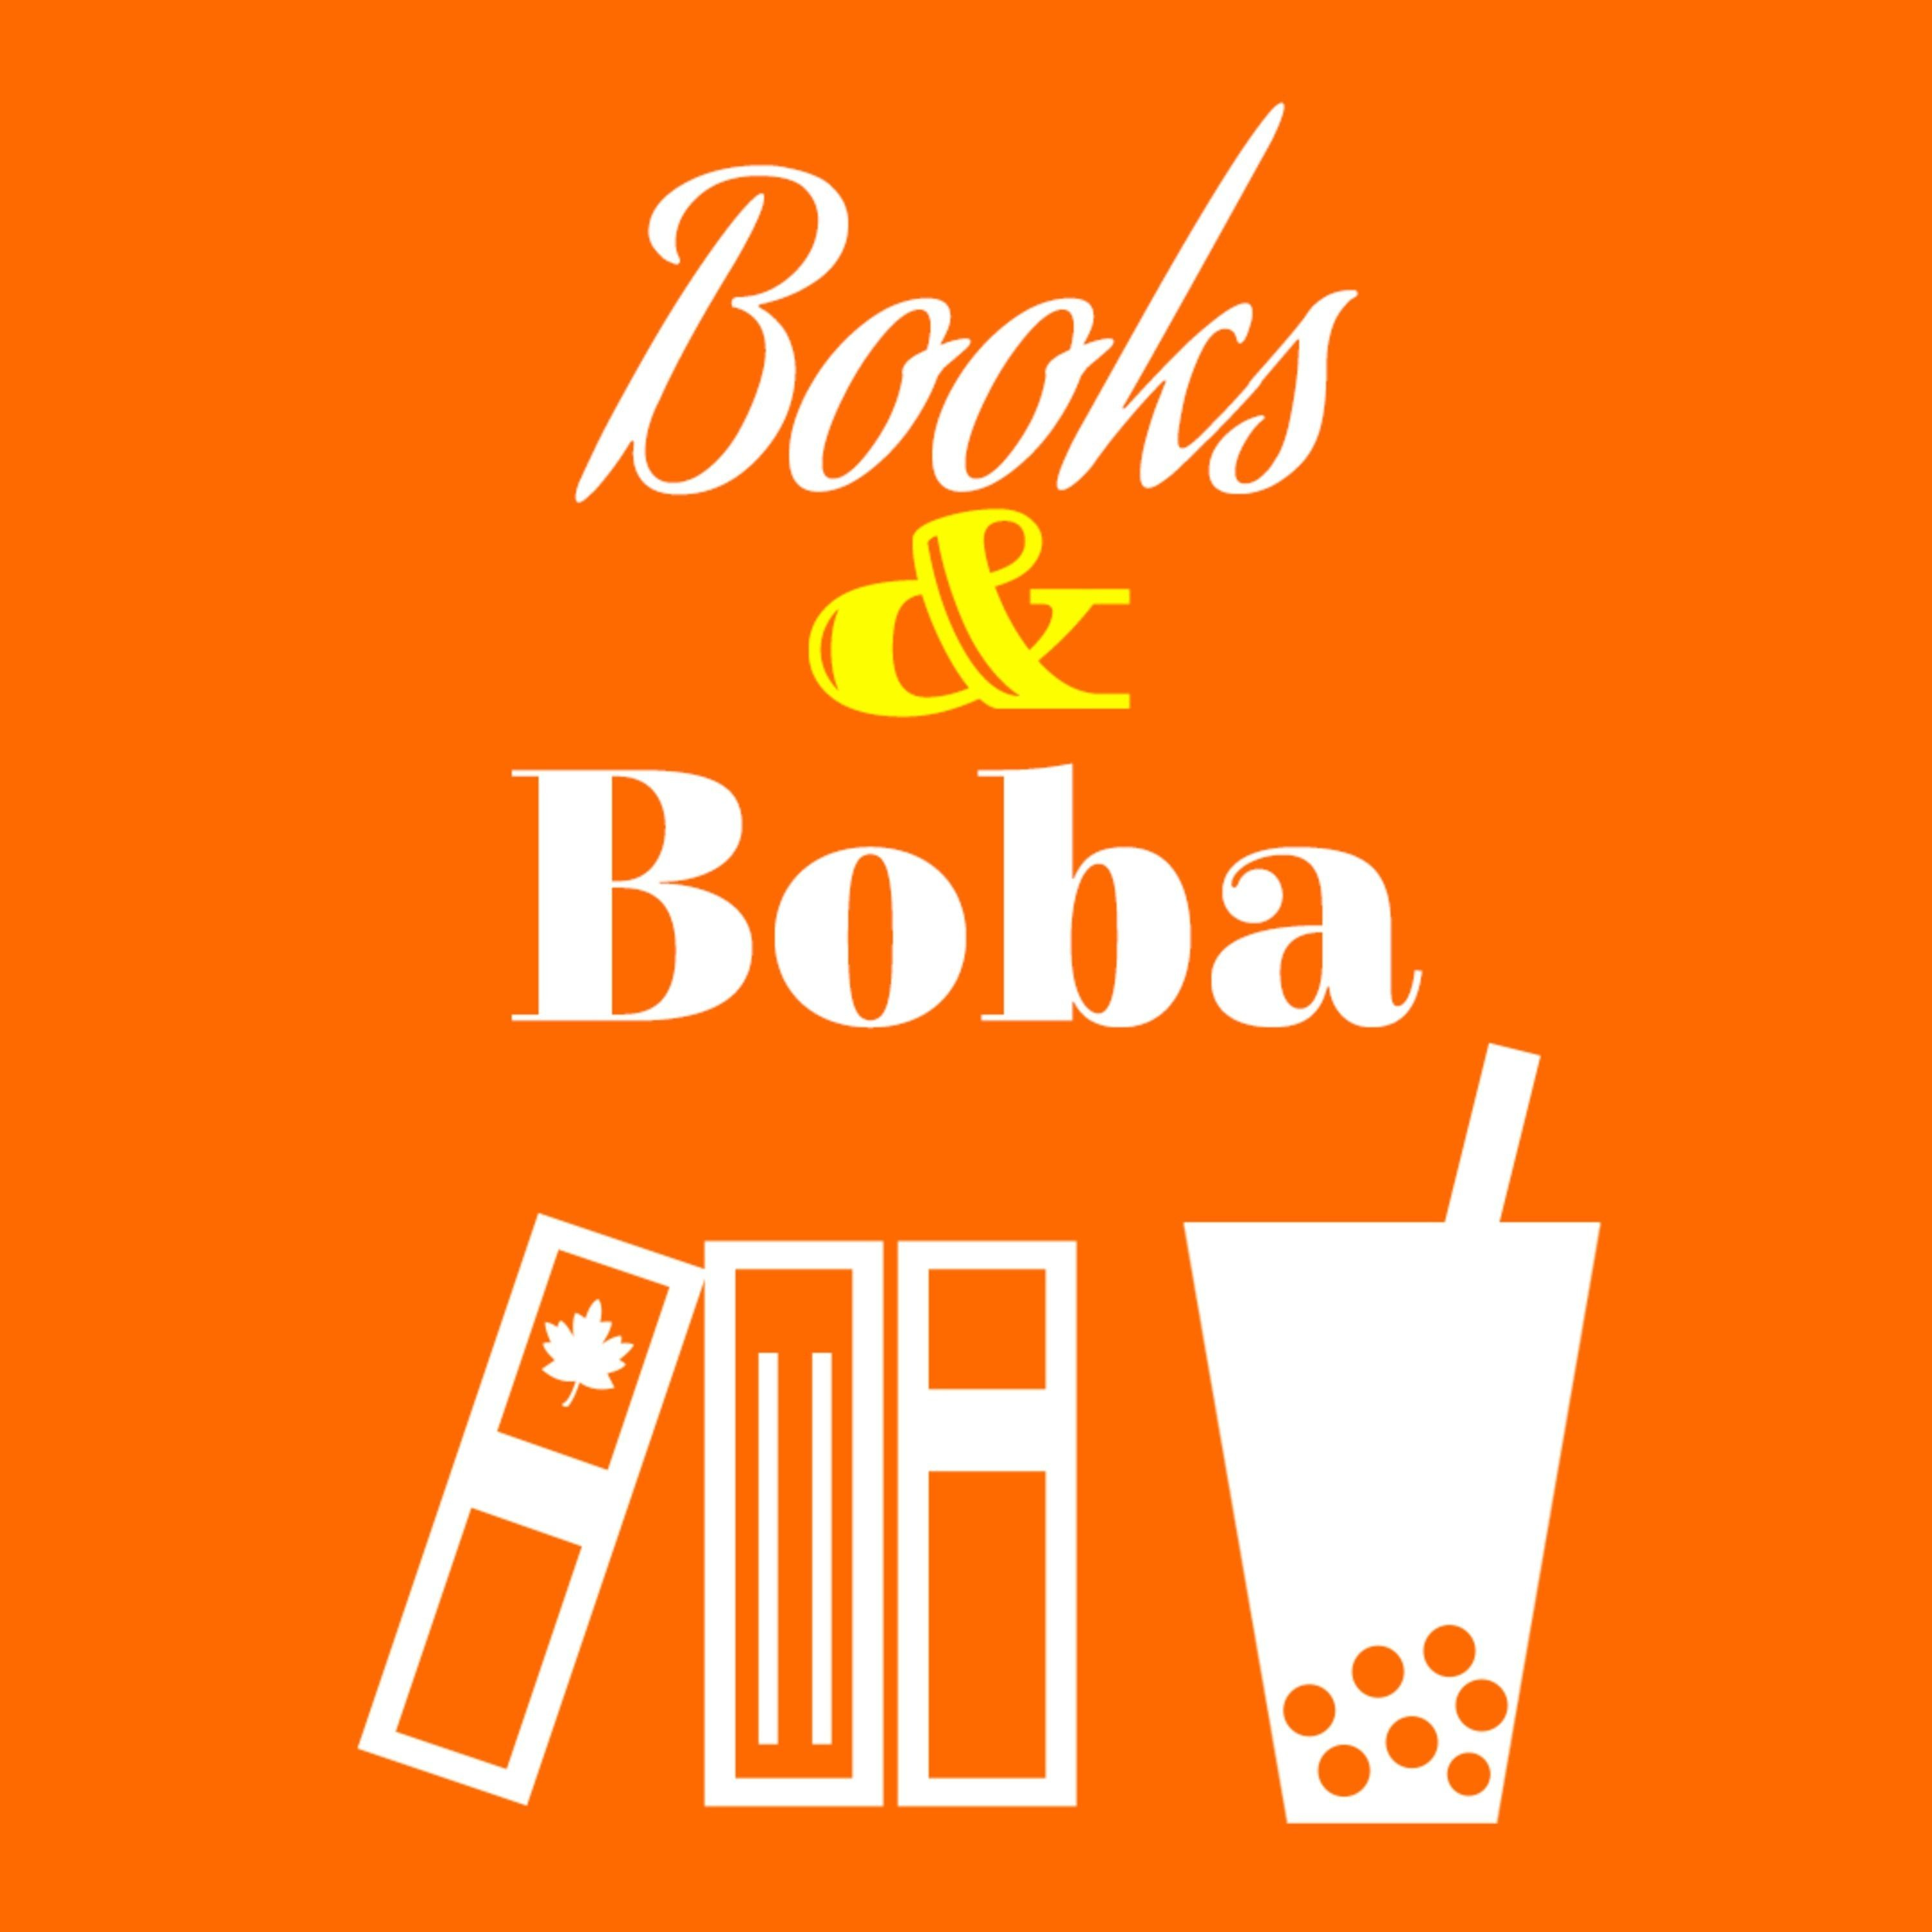 Show artwork for Books and Boba